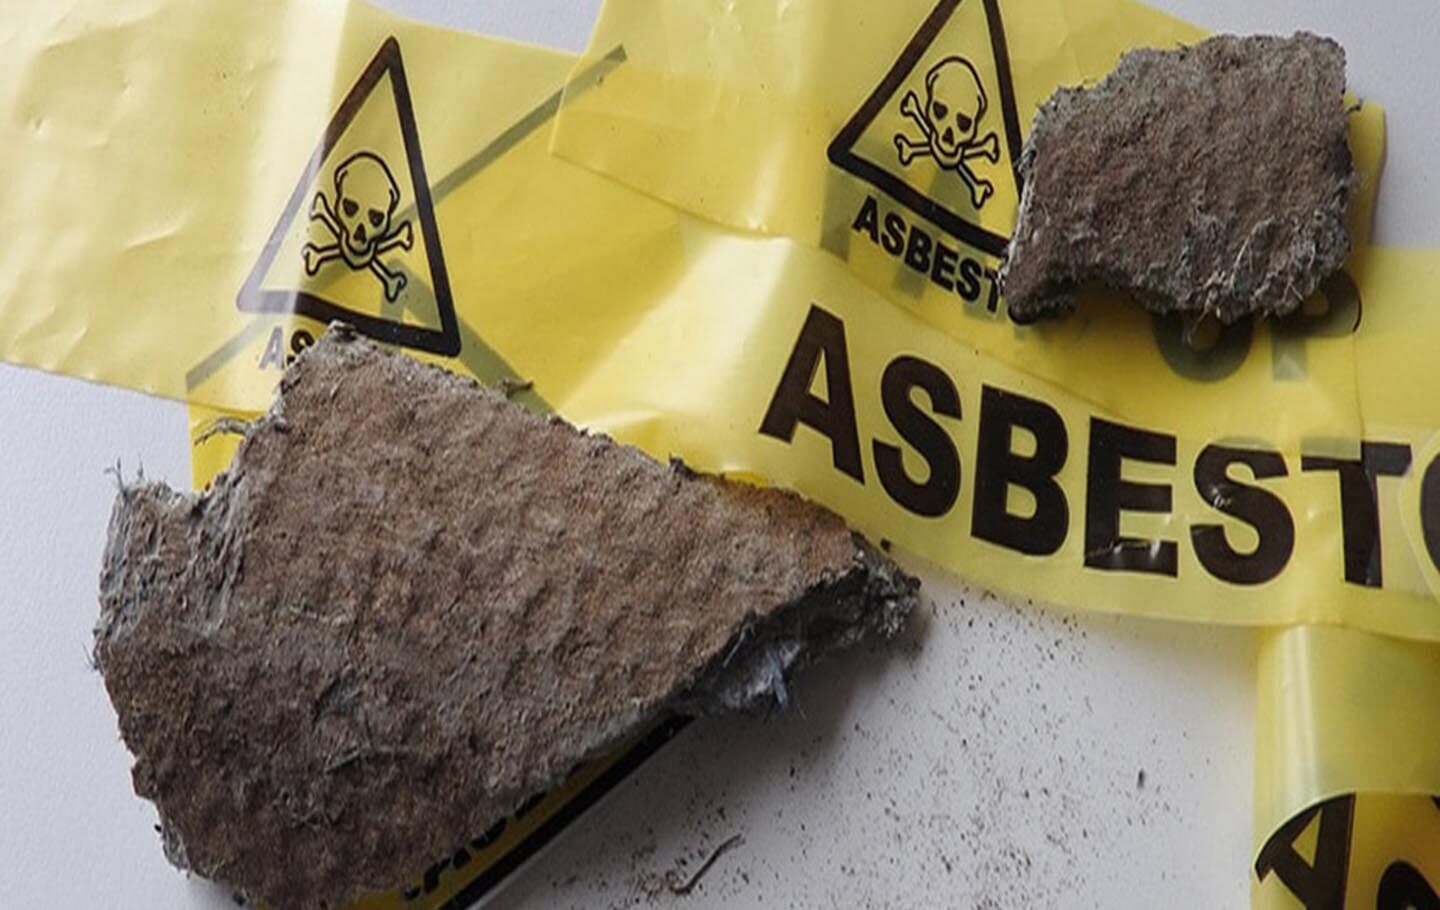 Asbest-herkenning-training-bloemendal-adviesburo1440 x 910